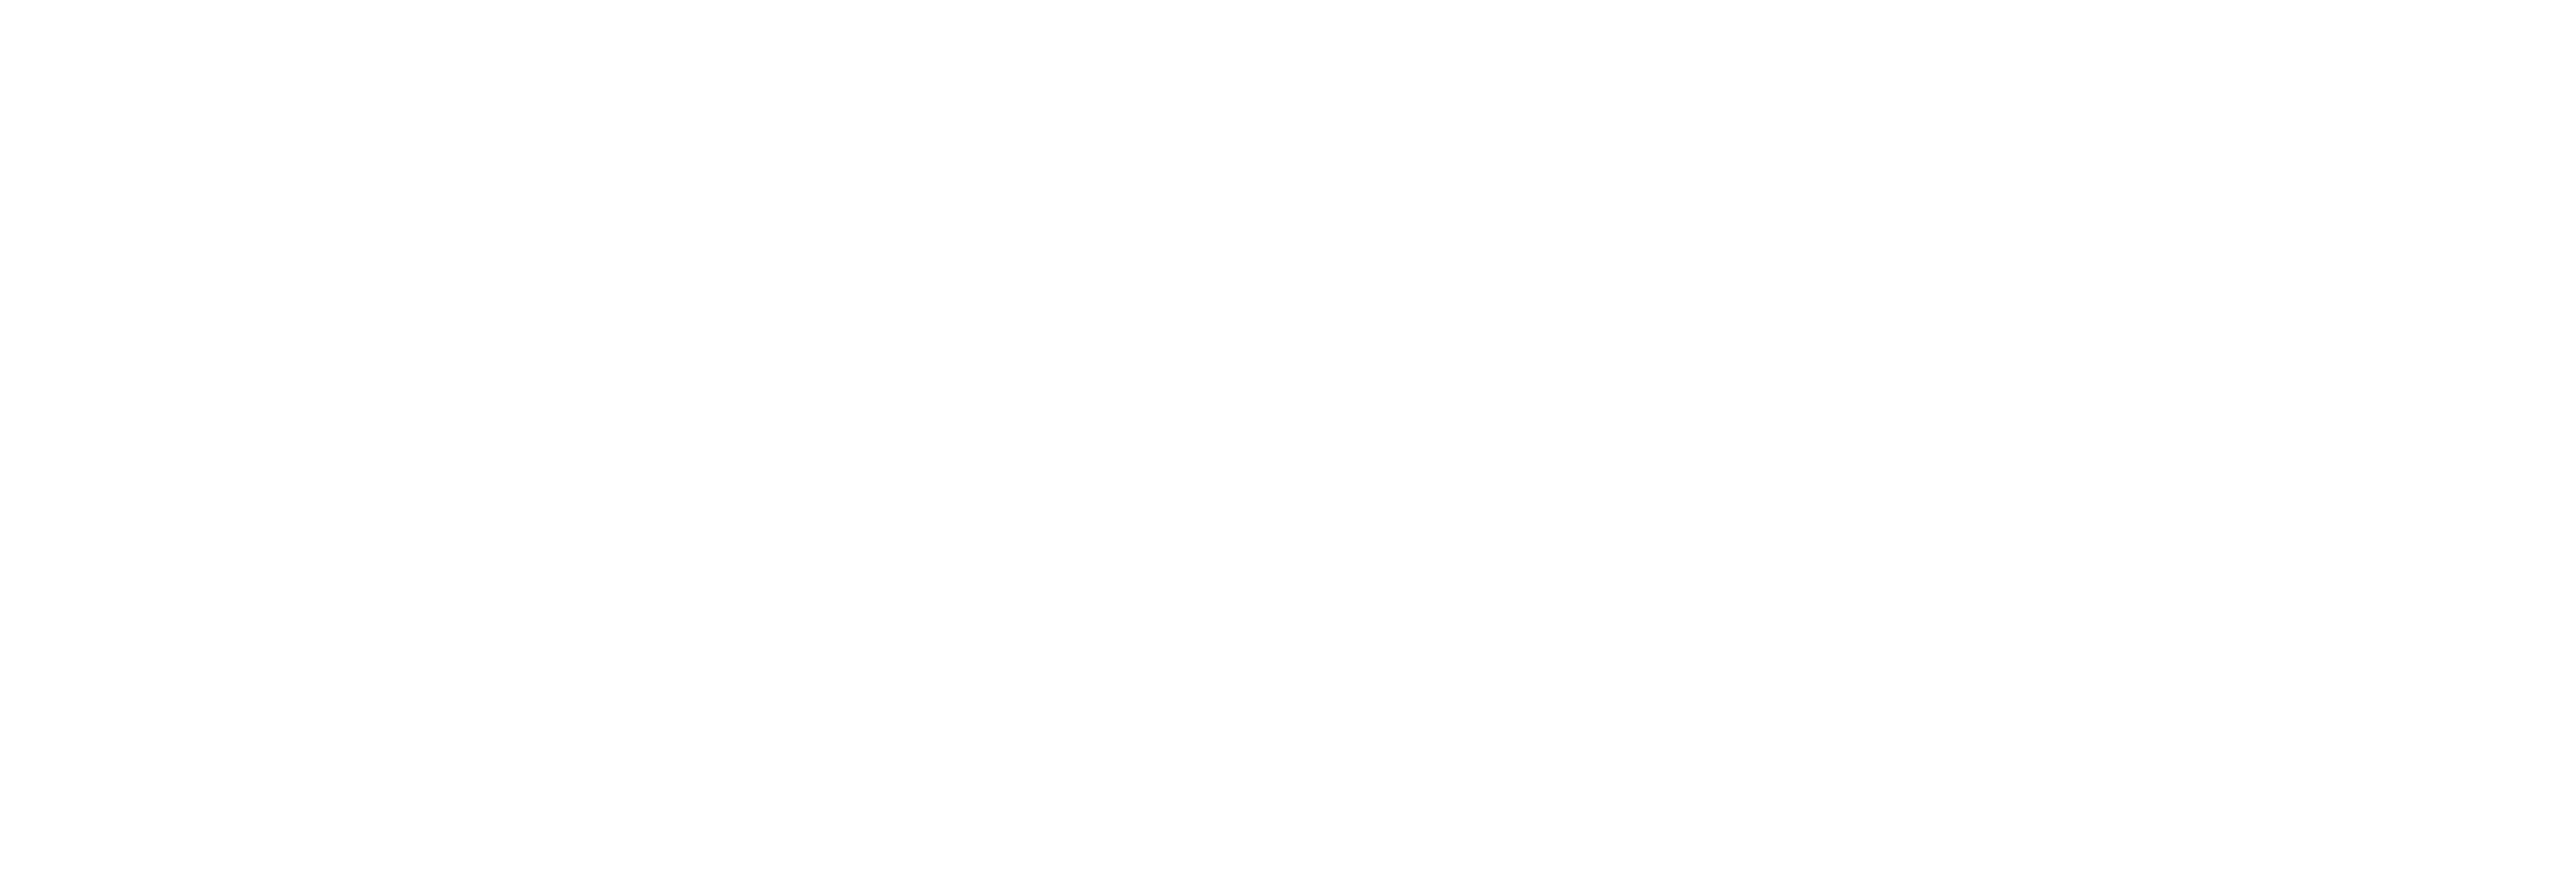 AniCura Muggenburg - Schagen logo